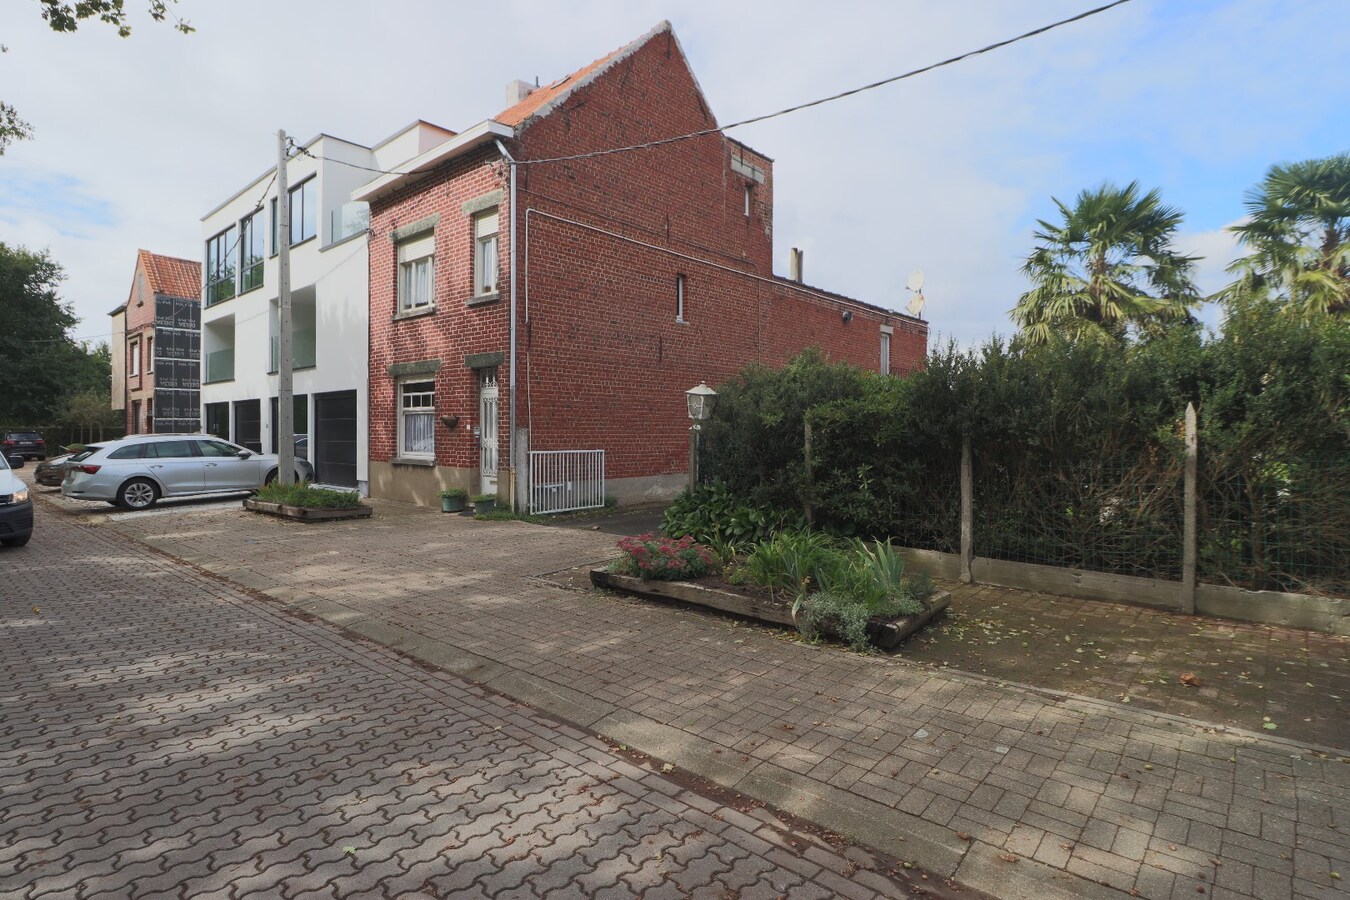 Nieuwbouw BEN - woning op zeer rustige locatie te Wevelgem ! 6 % btw ! 